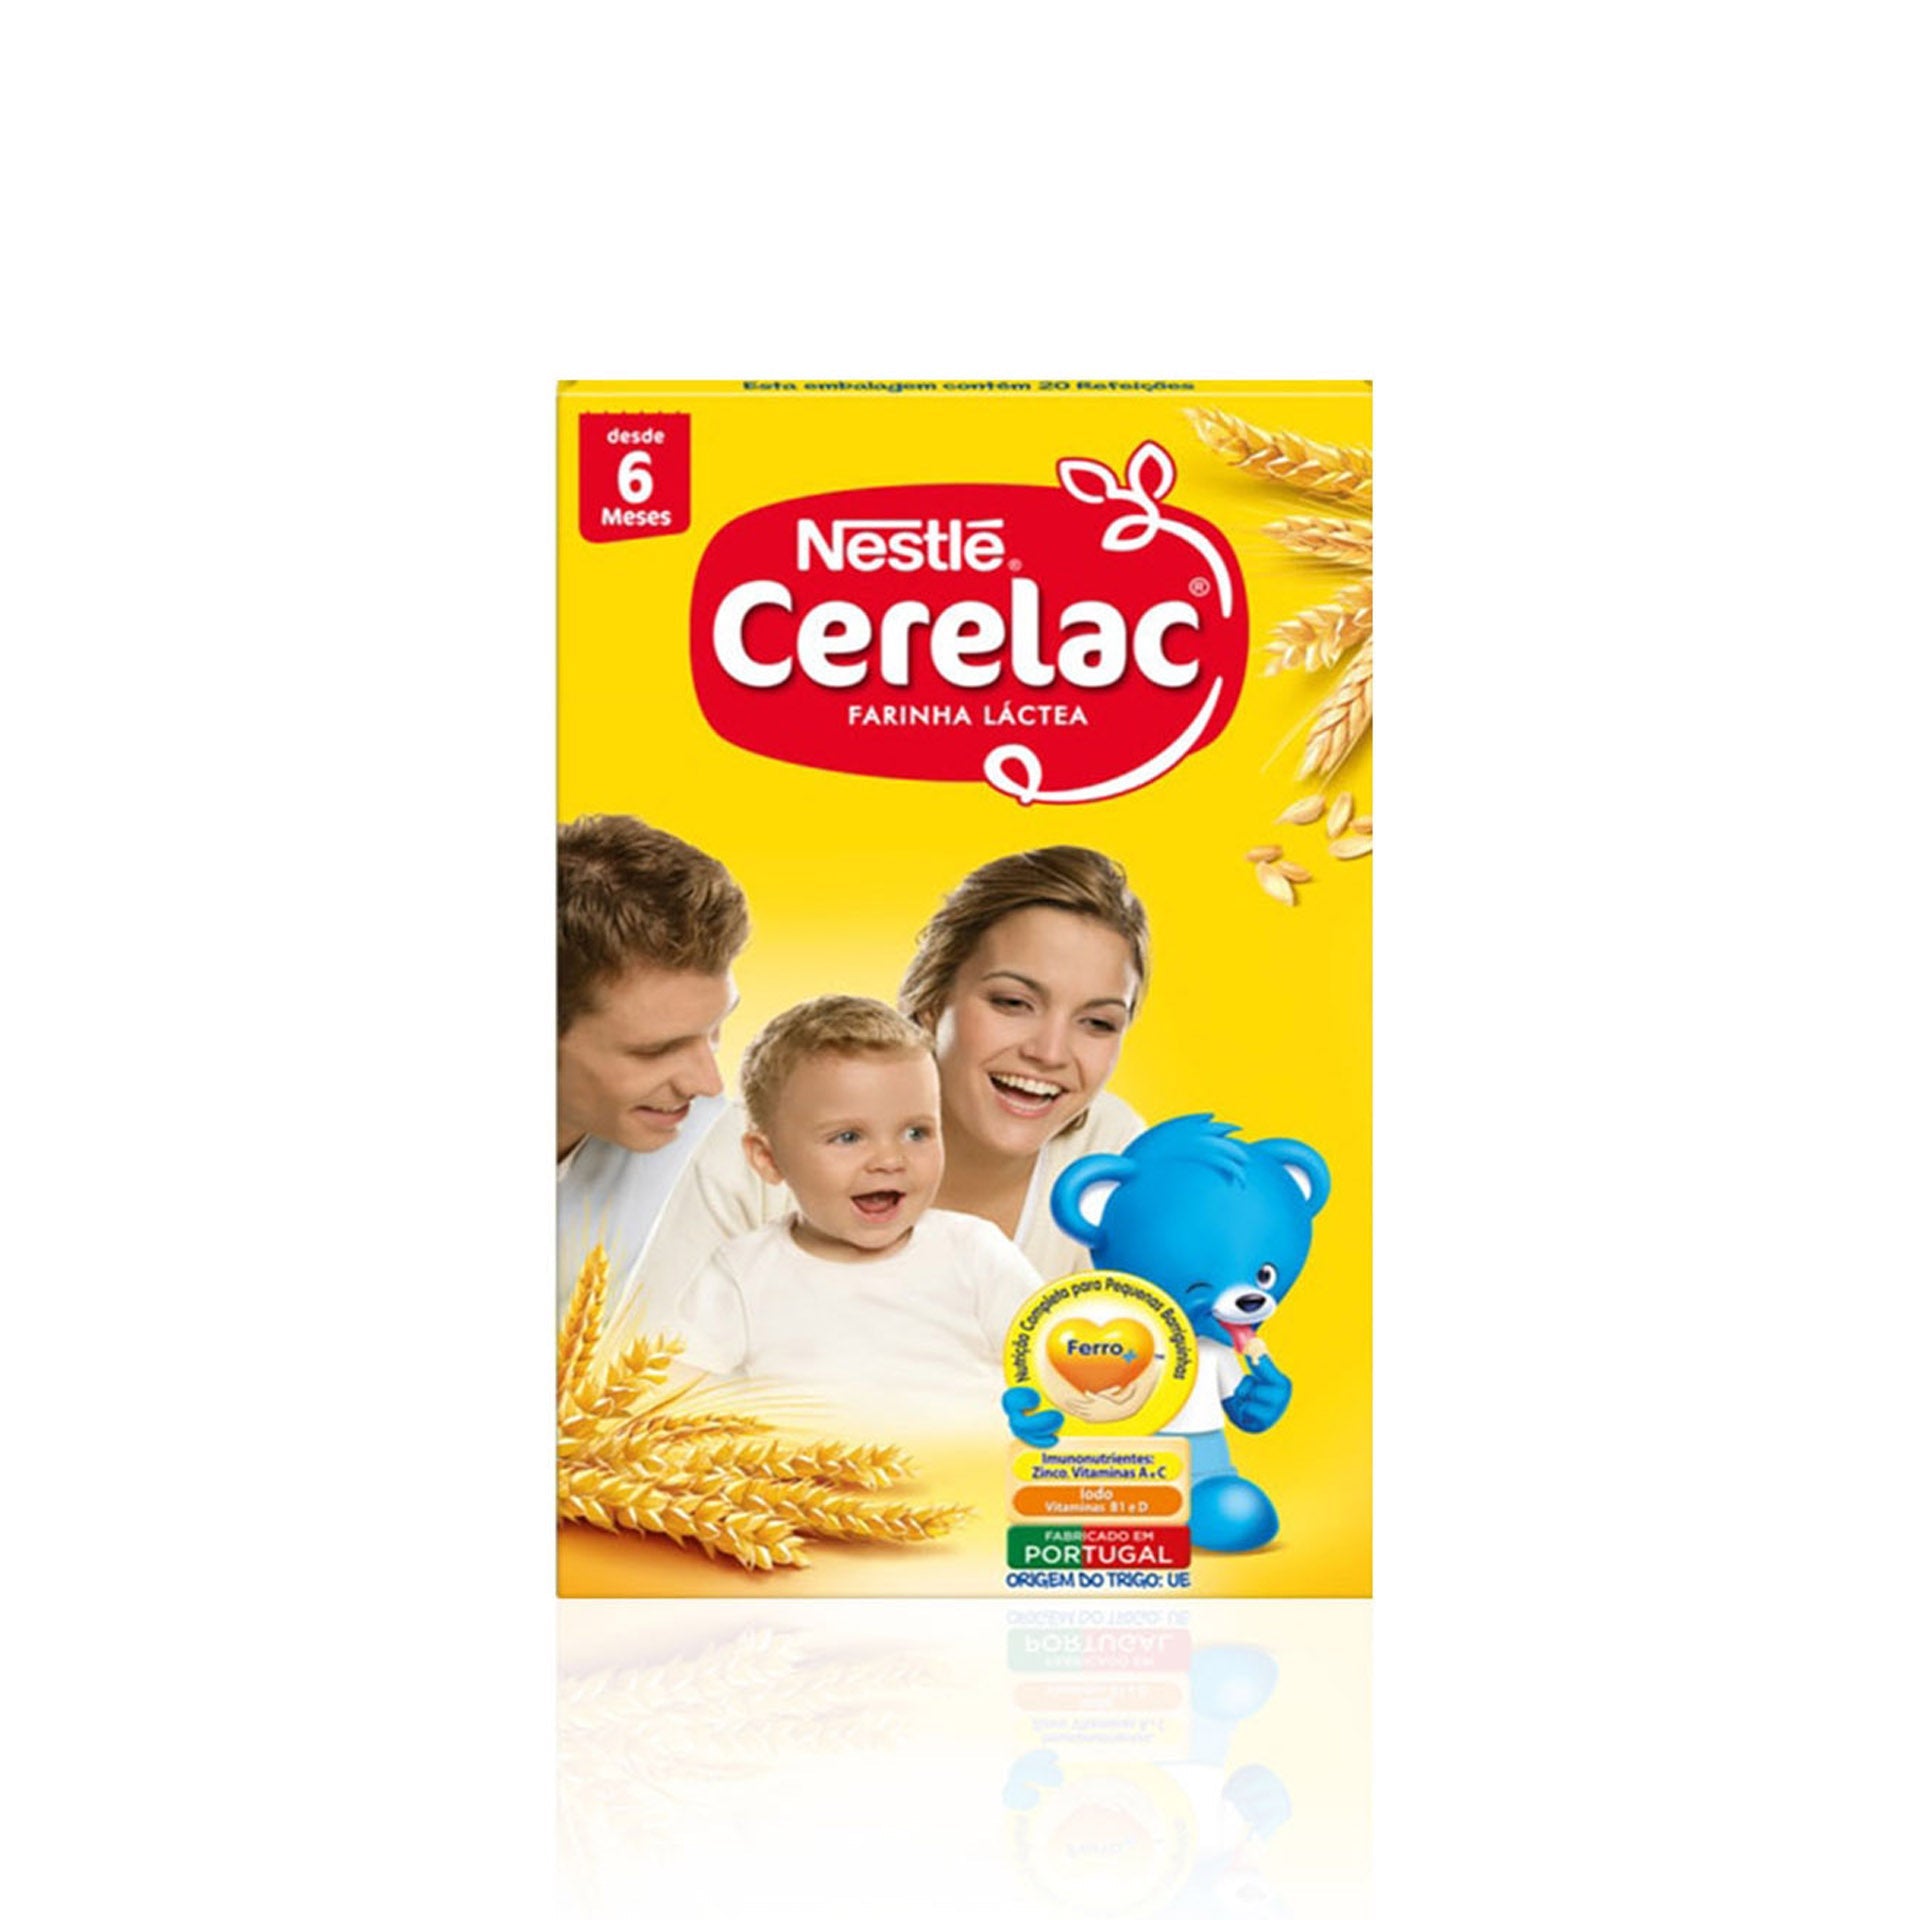 Nestlé Cerelac Farinha Láctea (+6 meses) 500 gr